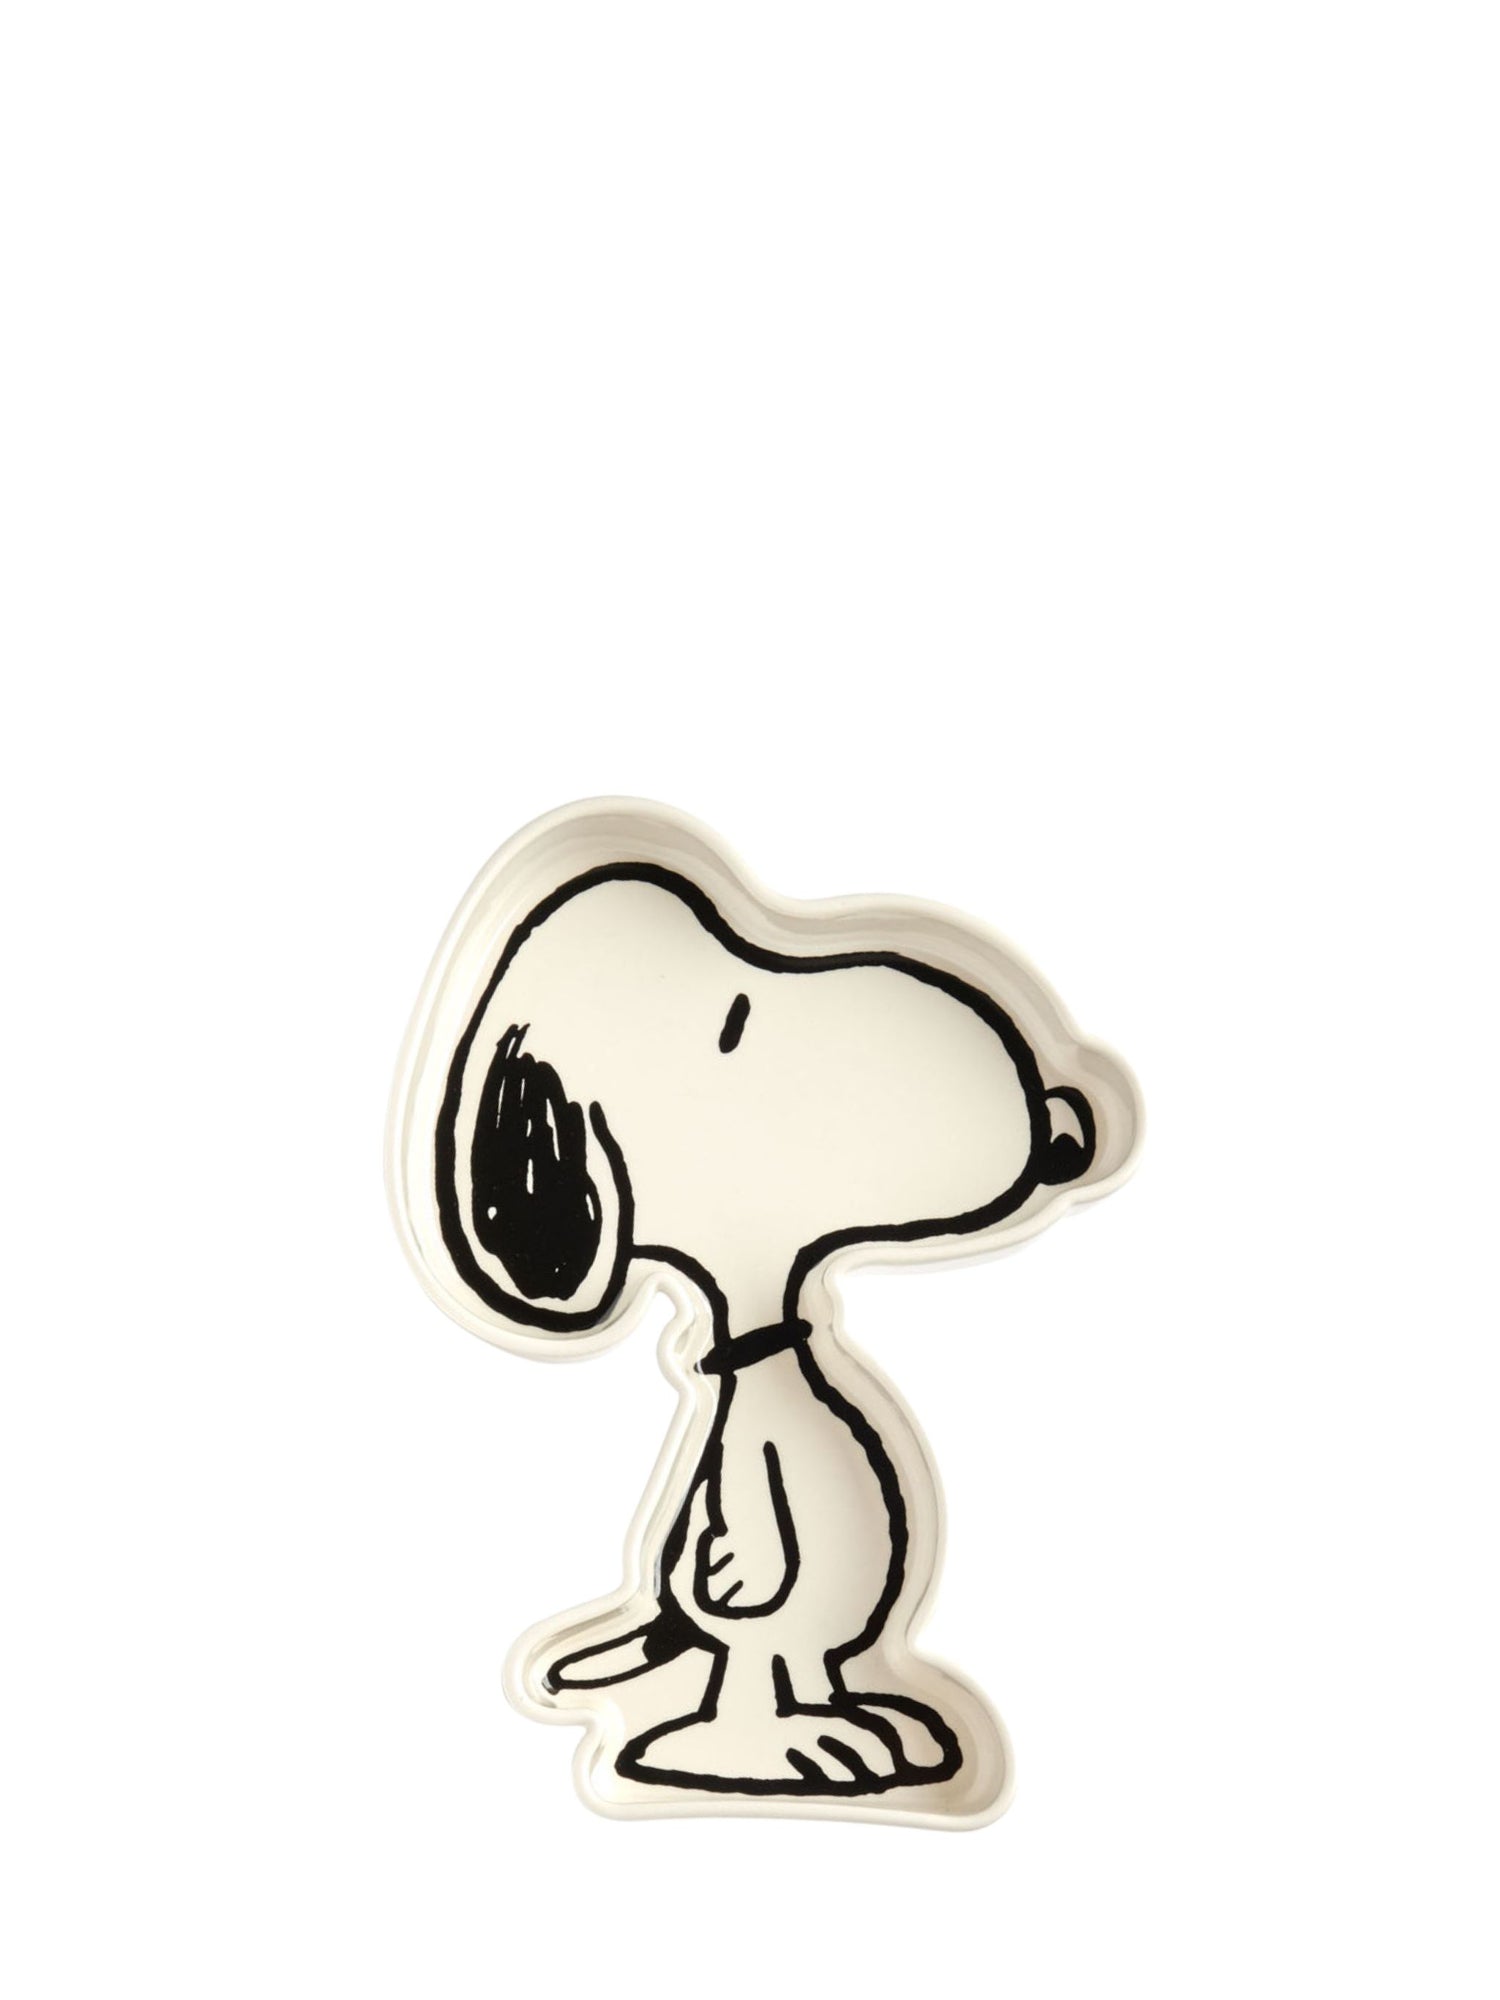 Peanuts - Snoopy Shaped Trinket Dish